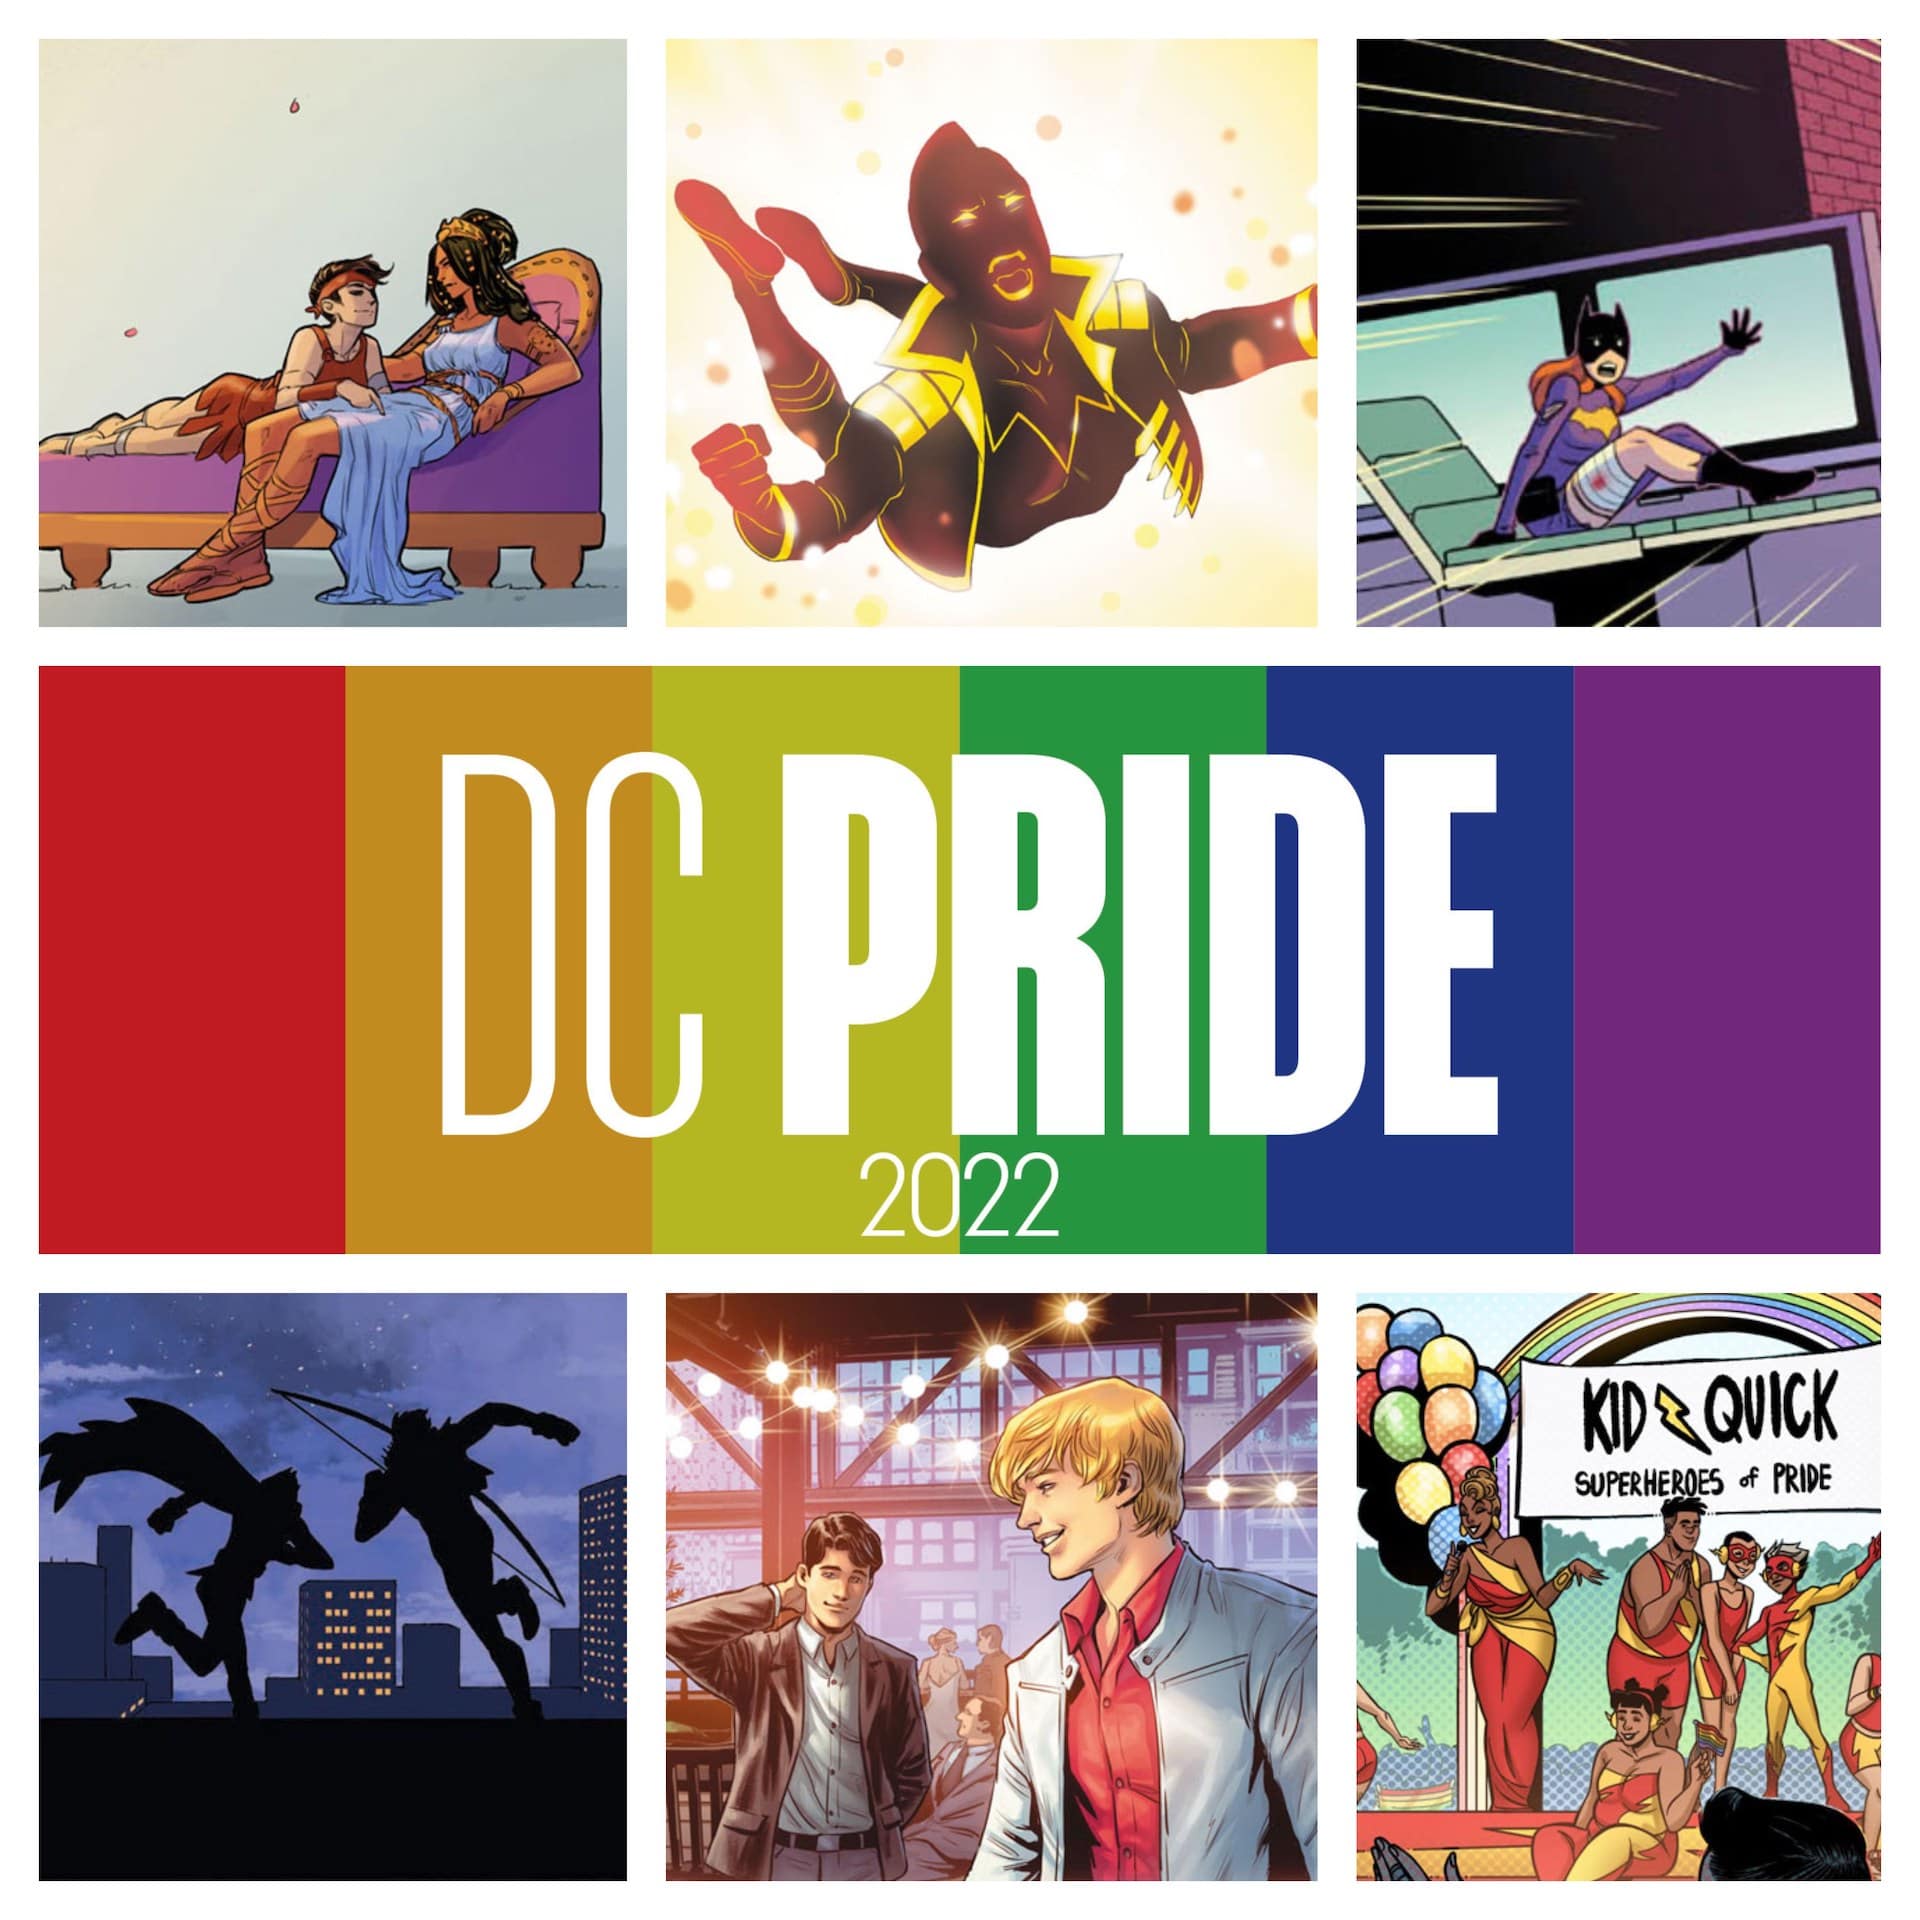 DC Pride 2022 creative teams revealed plus sneak peeks